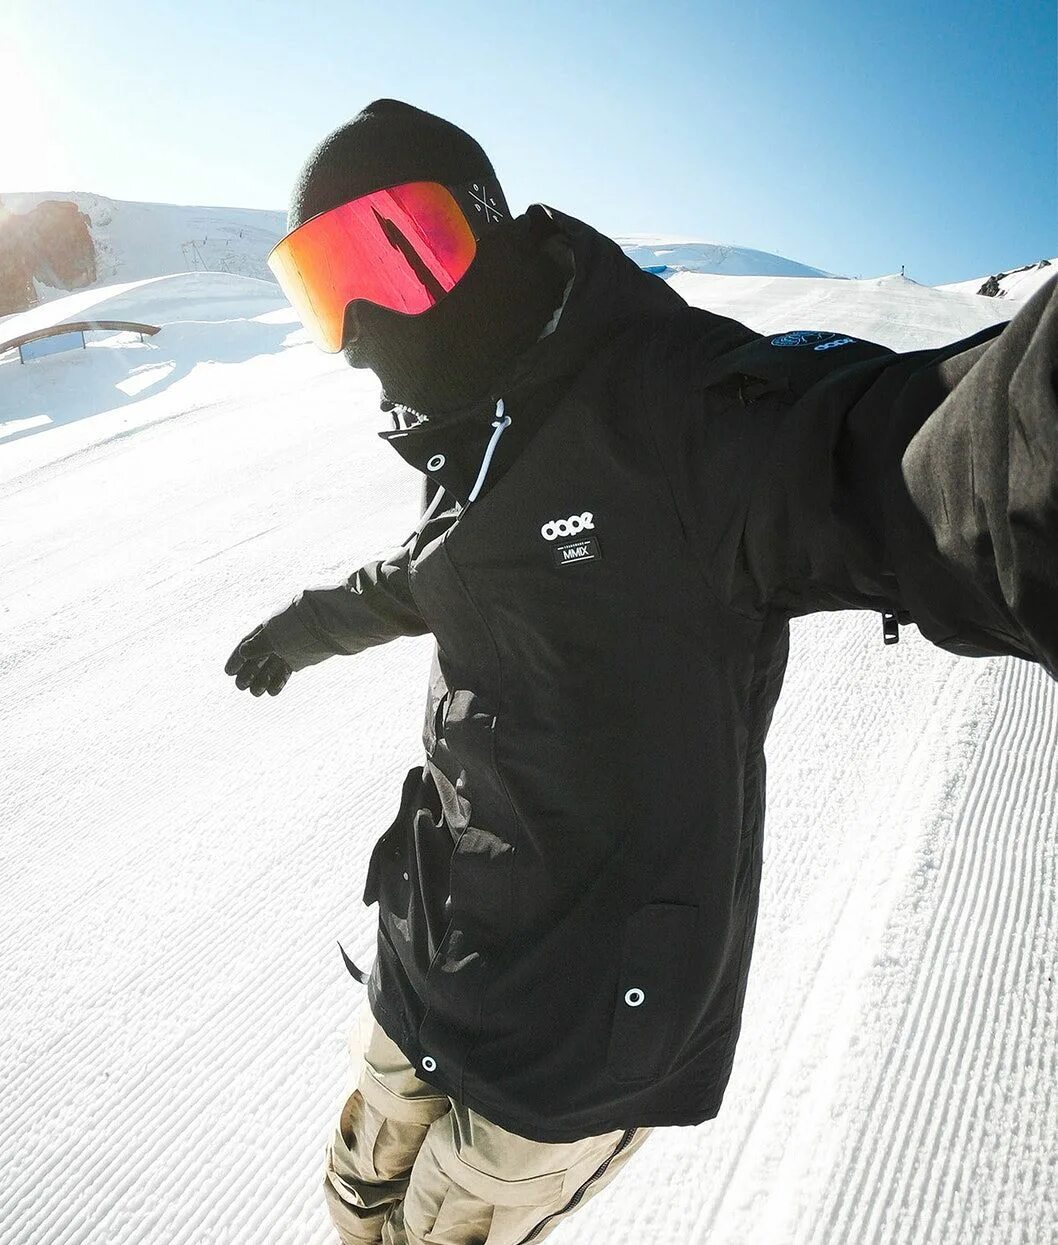 Сноуборд одежда черная. Сноубордическая куртка Dope. Стиль одежды сноубордиста. Мужской сноубордический стиль. Парень на снегоборде.